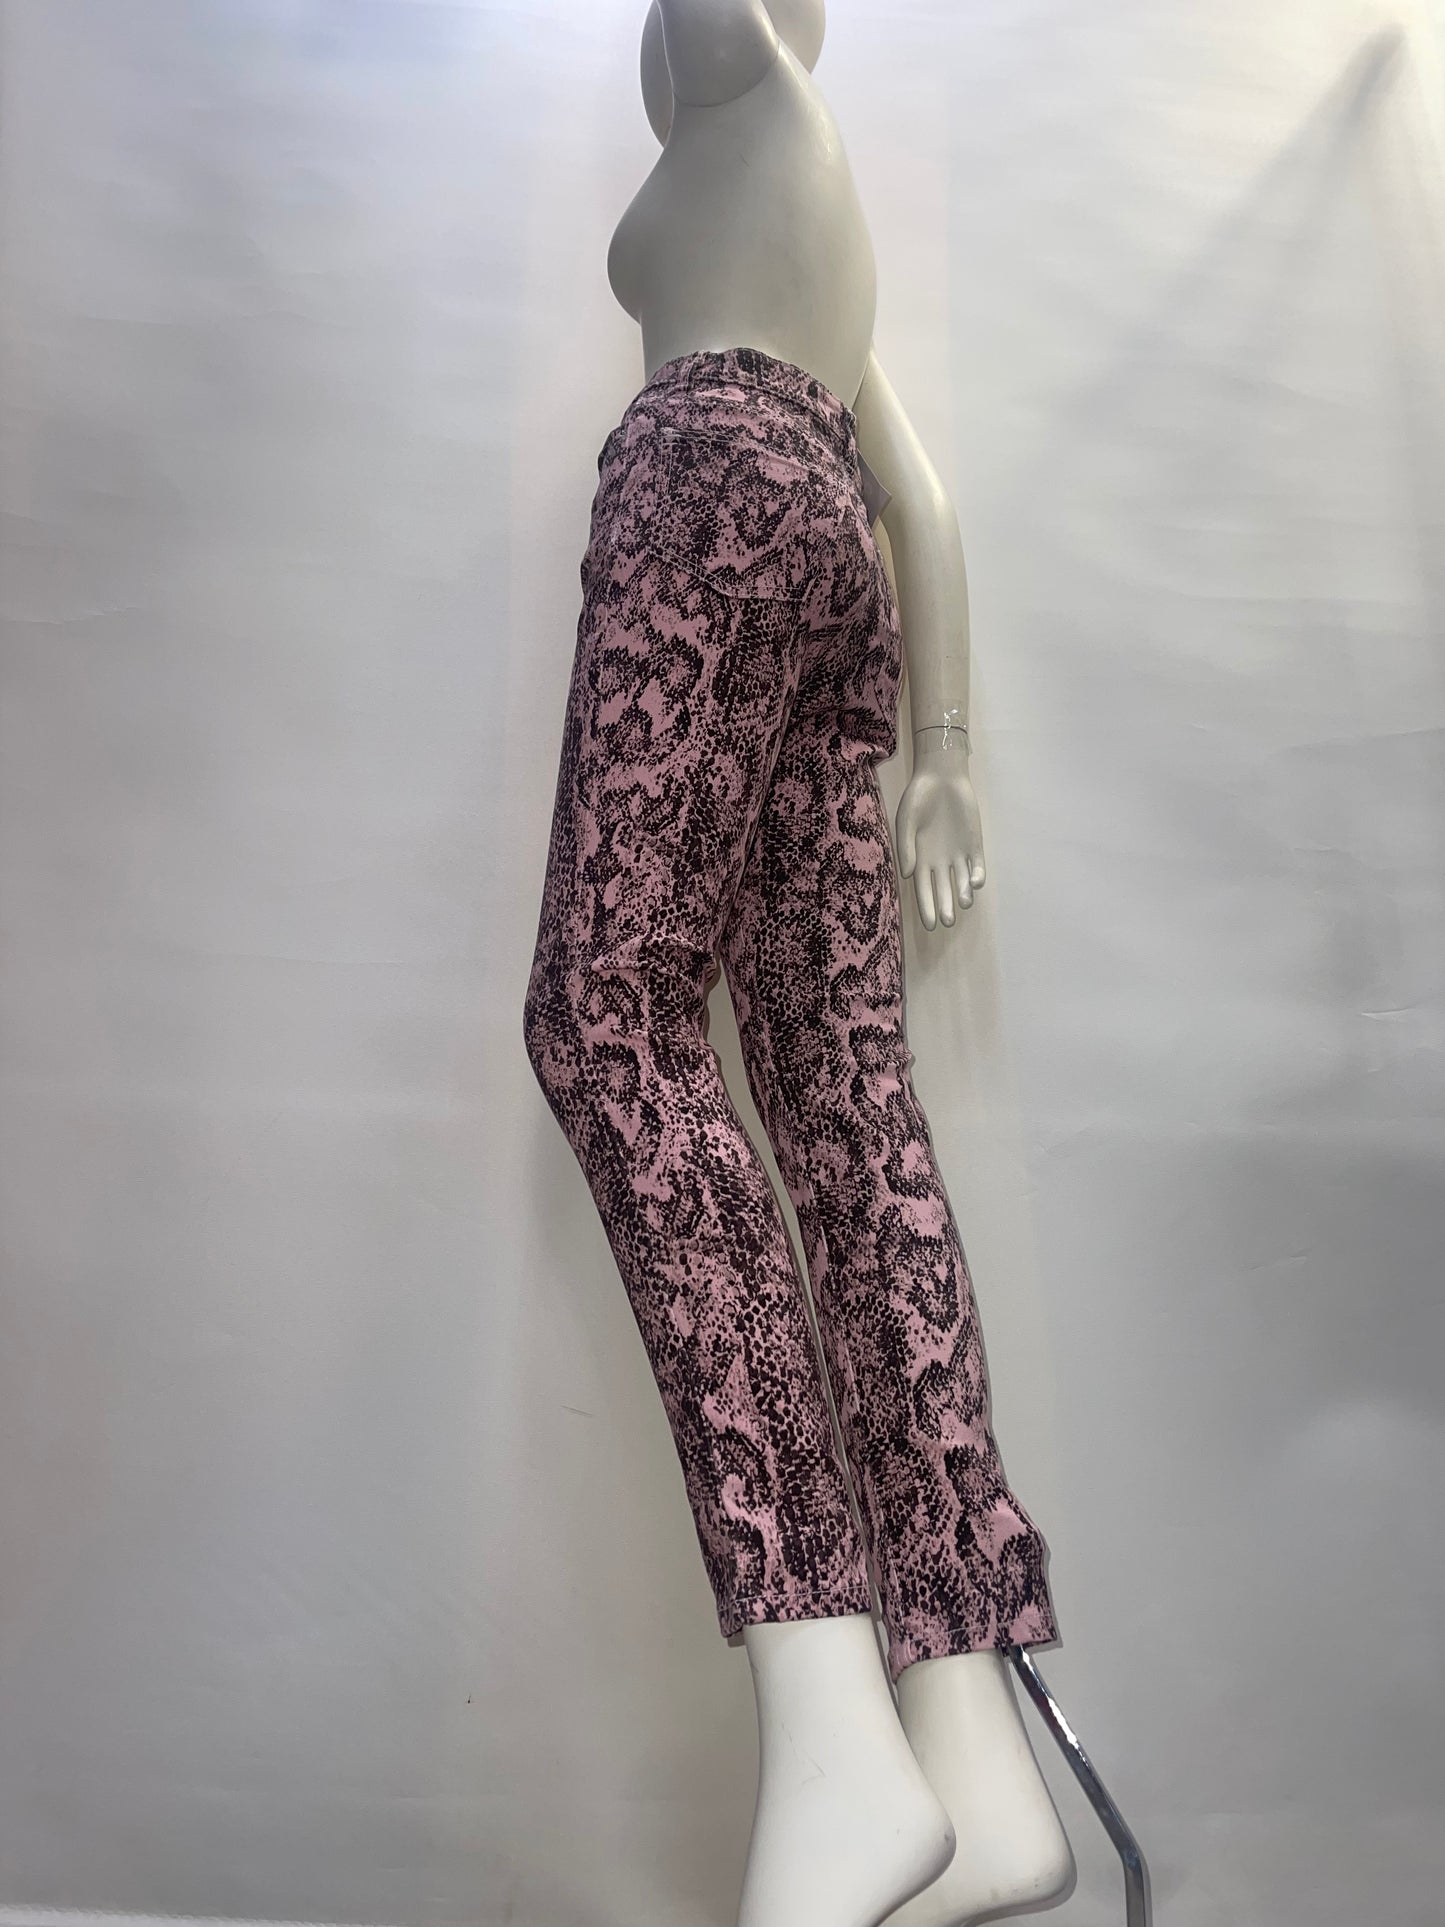 BDG Pink Snakeskin Patterned Pants (Size 26)